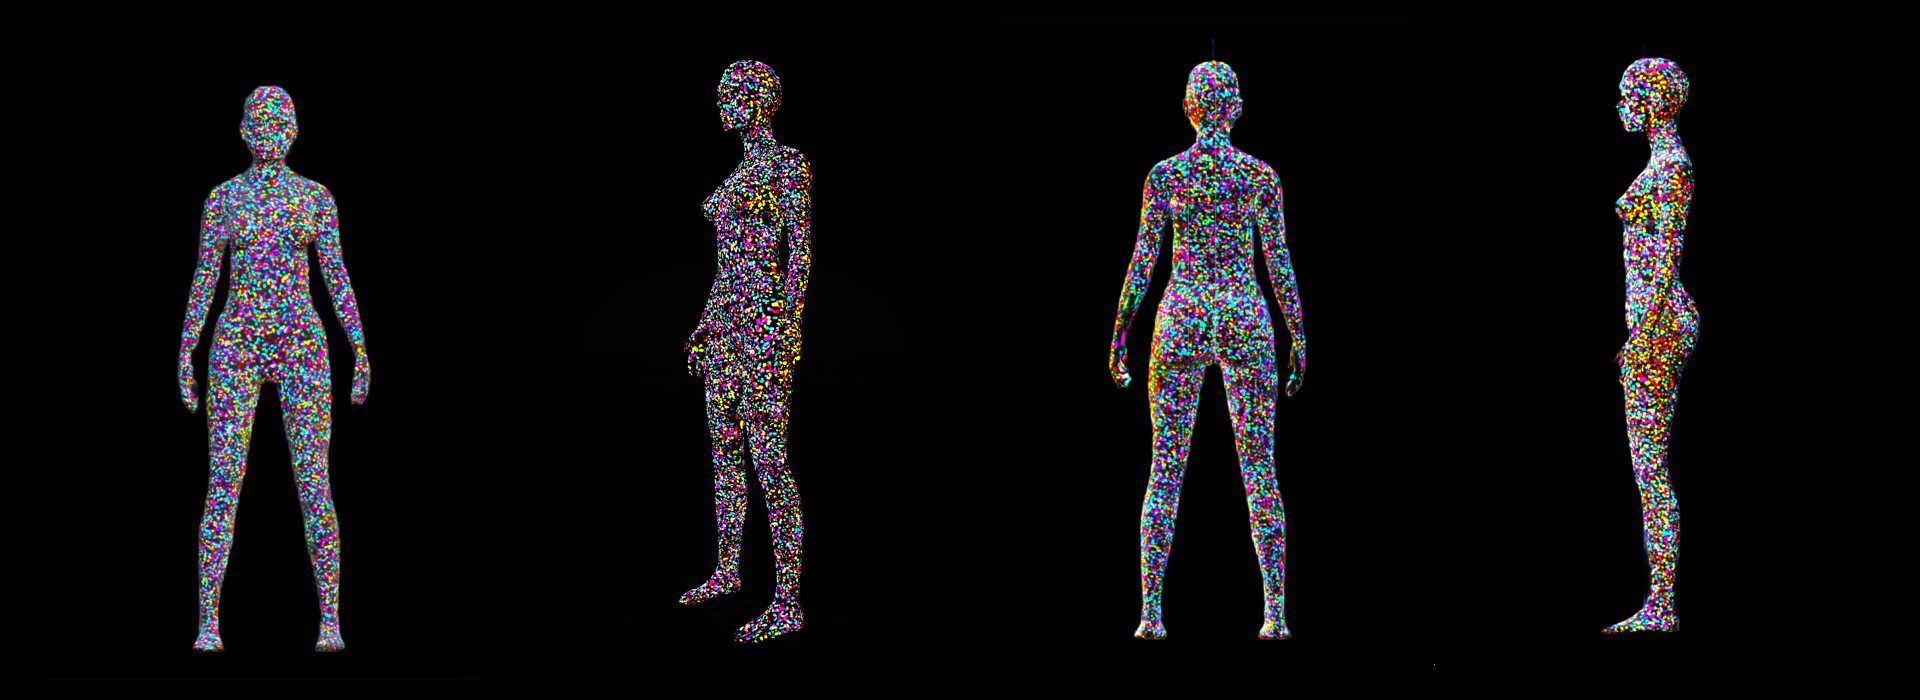 Układ 4 kolorowych modeli ludzkiego ciała na czarnym tle. Ta sama forma ludzkiego ciała zbudowana z kolorowych punktów ukazana zostaje z 4 stron, od przodu, tyłu, boku i ¾.